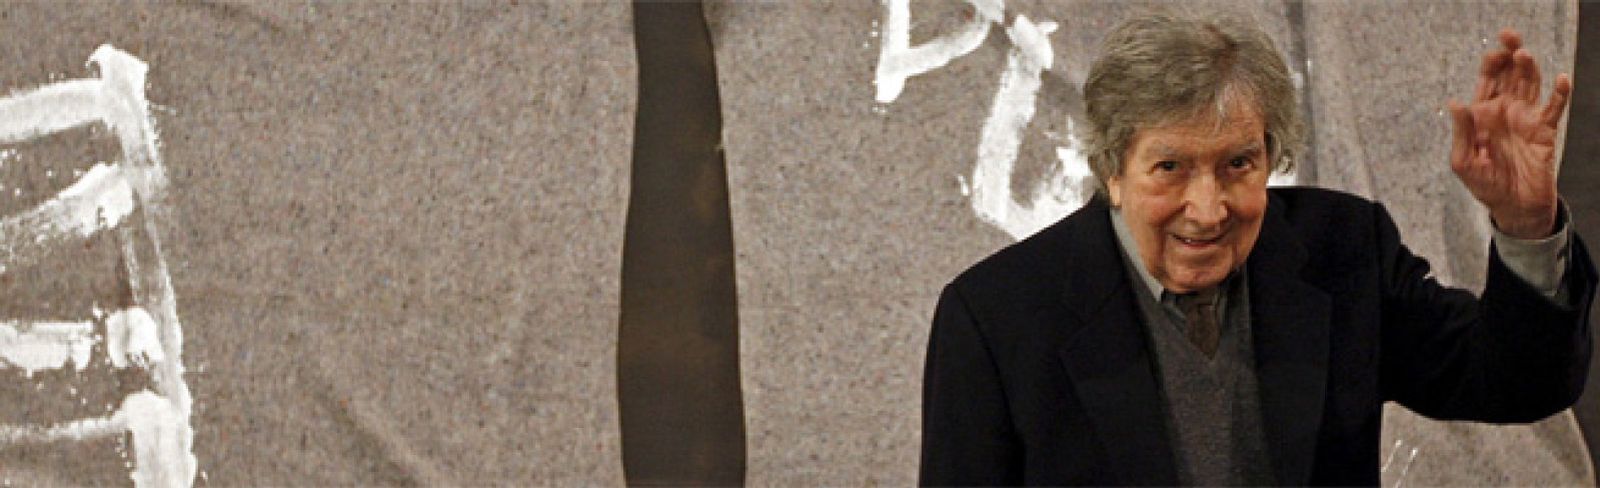 Foto: Fallece a los 88 años el artista Antoni Tàpies